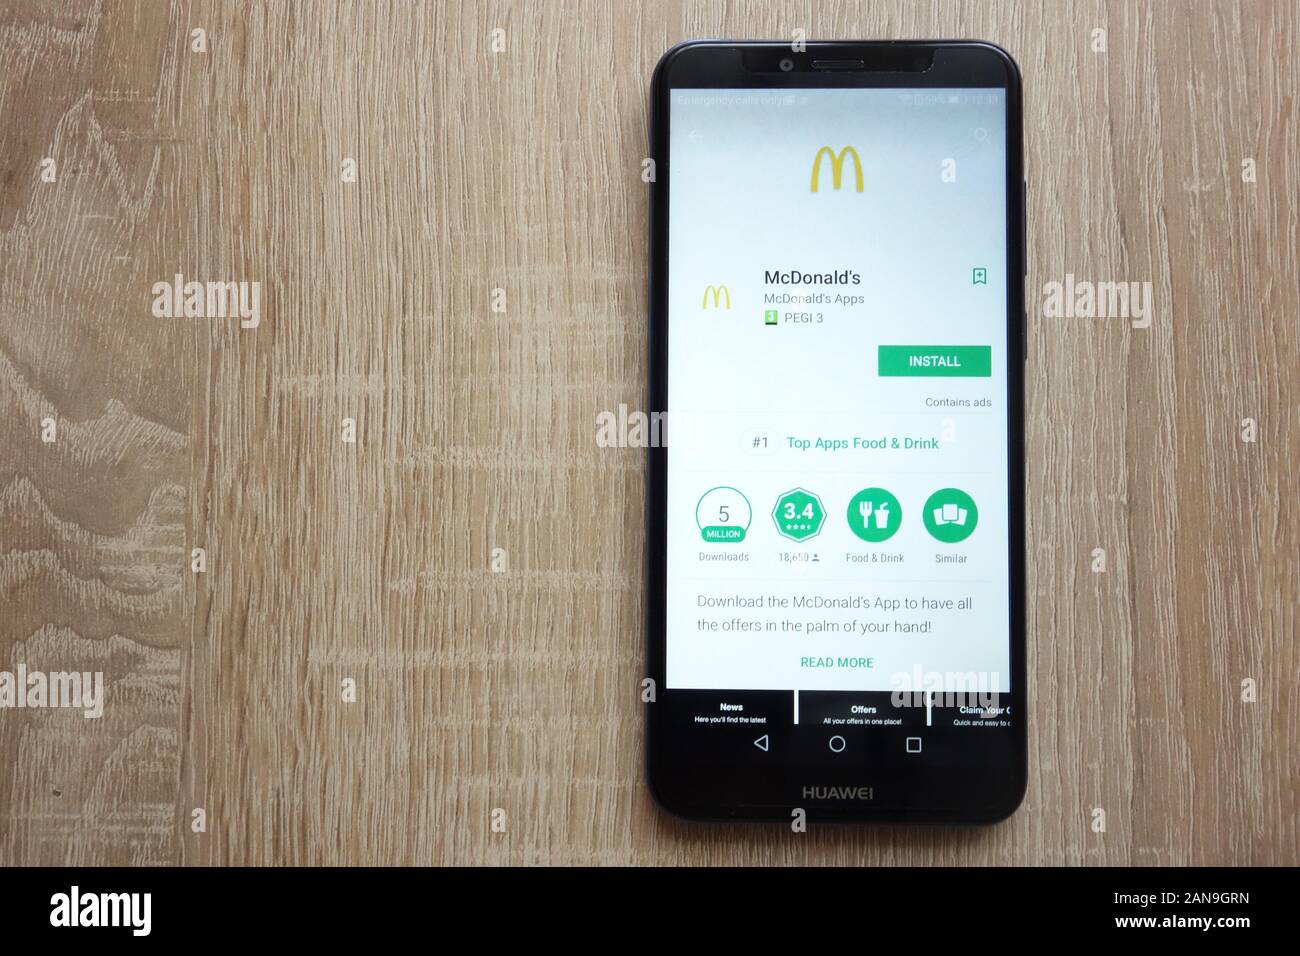 Application McDonald's sur le site Web de Google Play Store affichée sur le smartphone Huawei an 6 2018 Banque D'Images